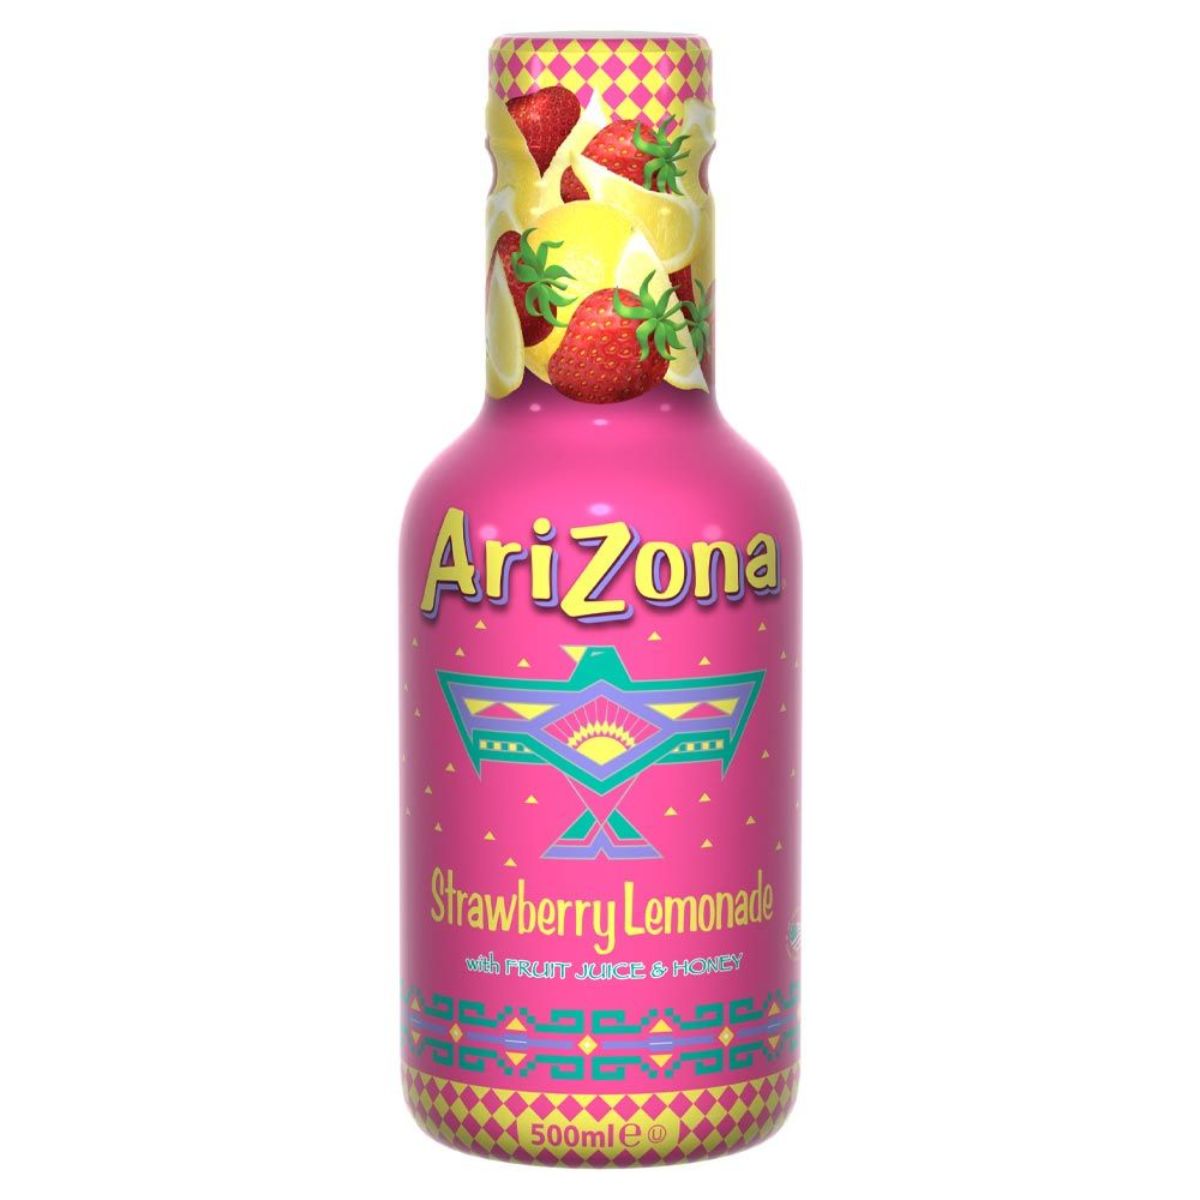 A bottle of Arizona - Strawberry Lemonade Juice & Honey - 500ml.